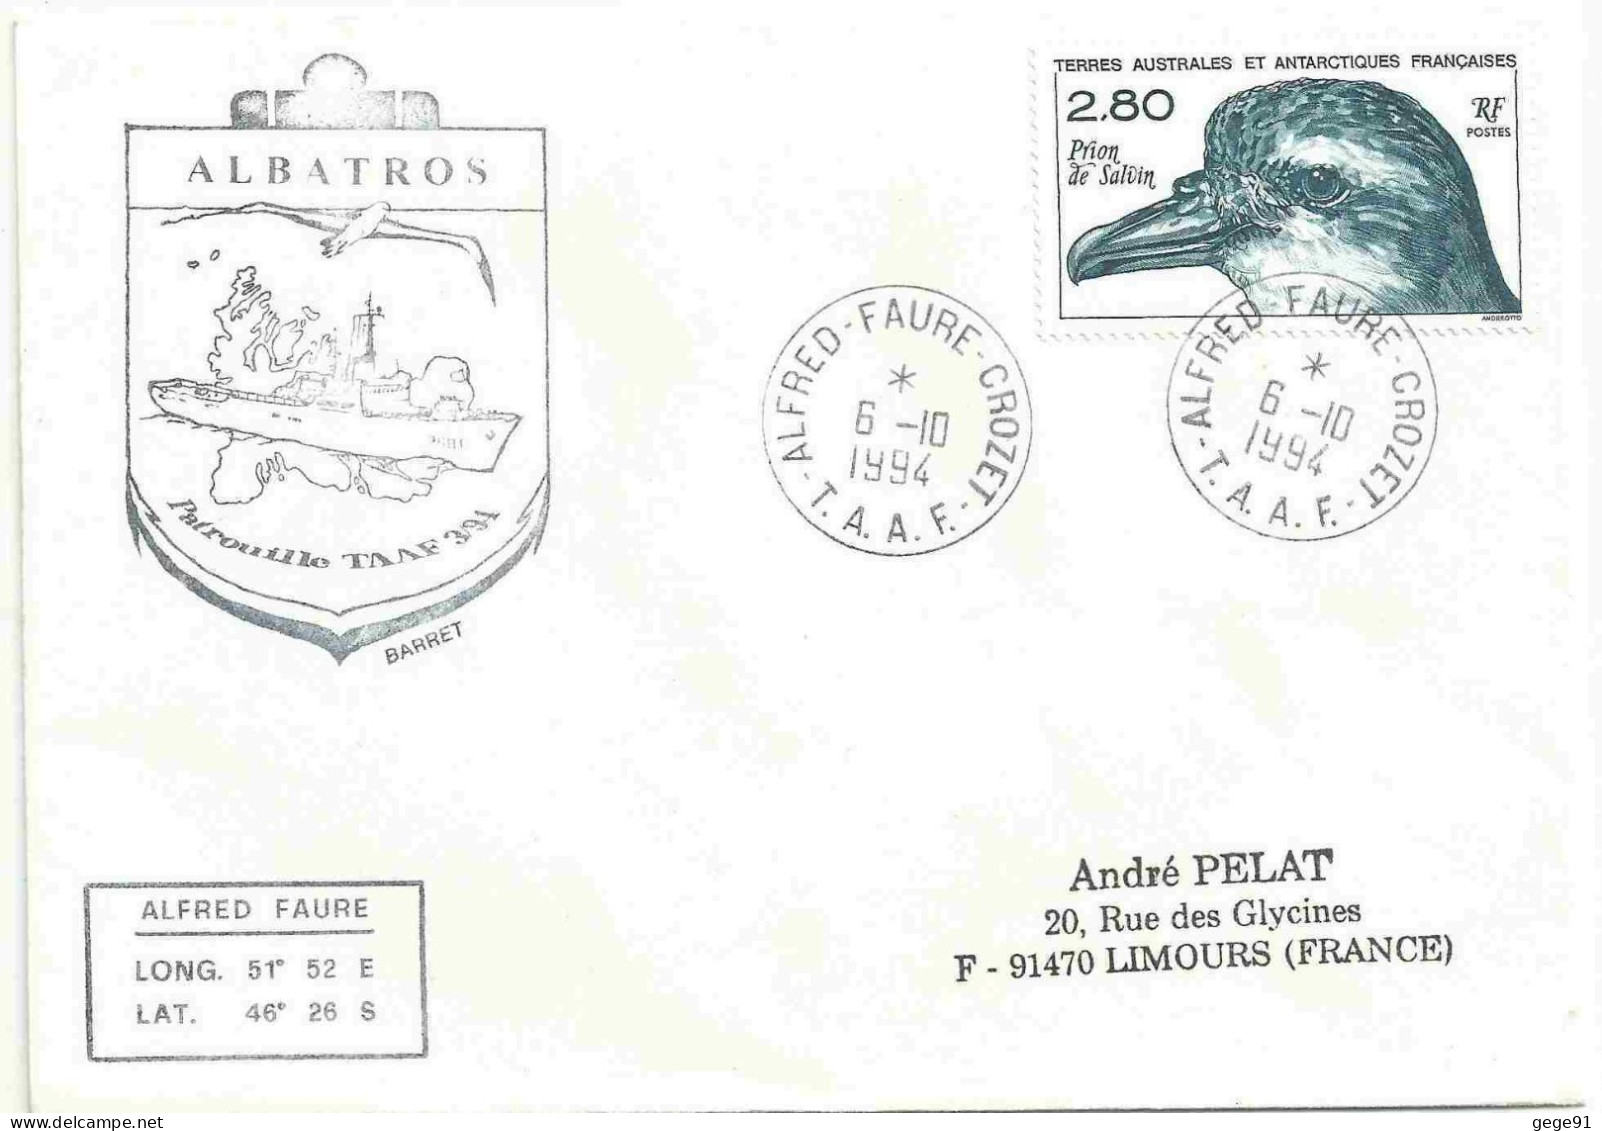 YT 189 Prion De Salvin - Posté à Bord De L'Albatros - Alfred Faure - Crozet - 06/10/1994 - Brieven En Documenten